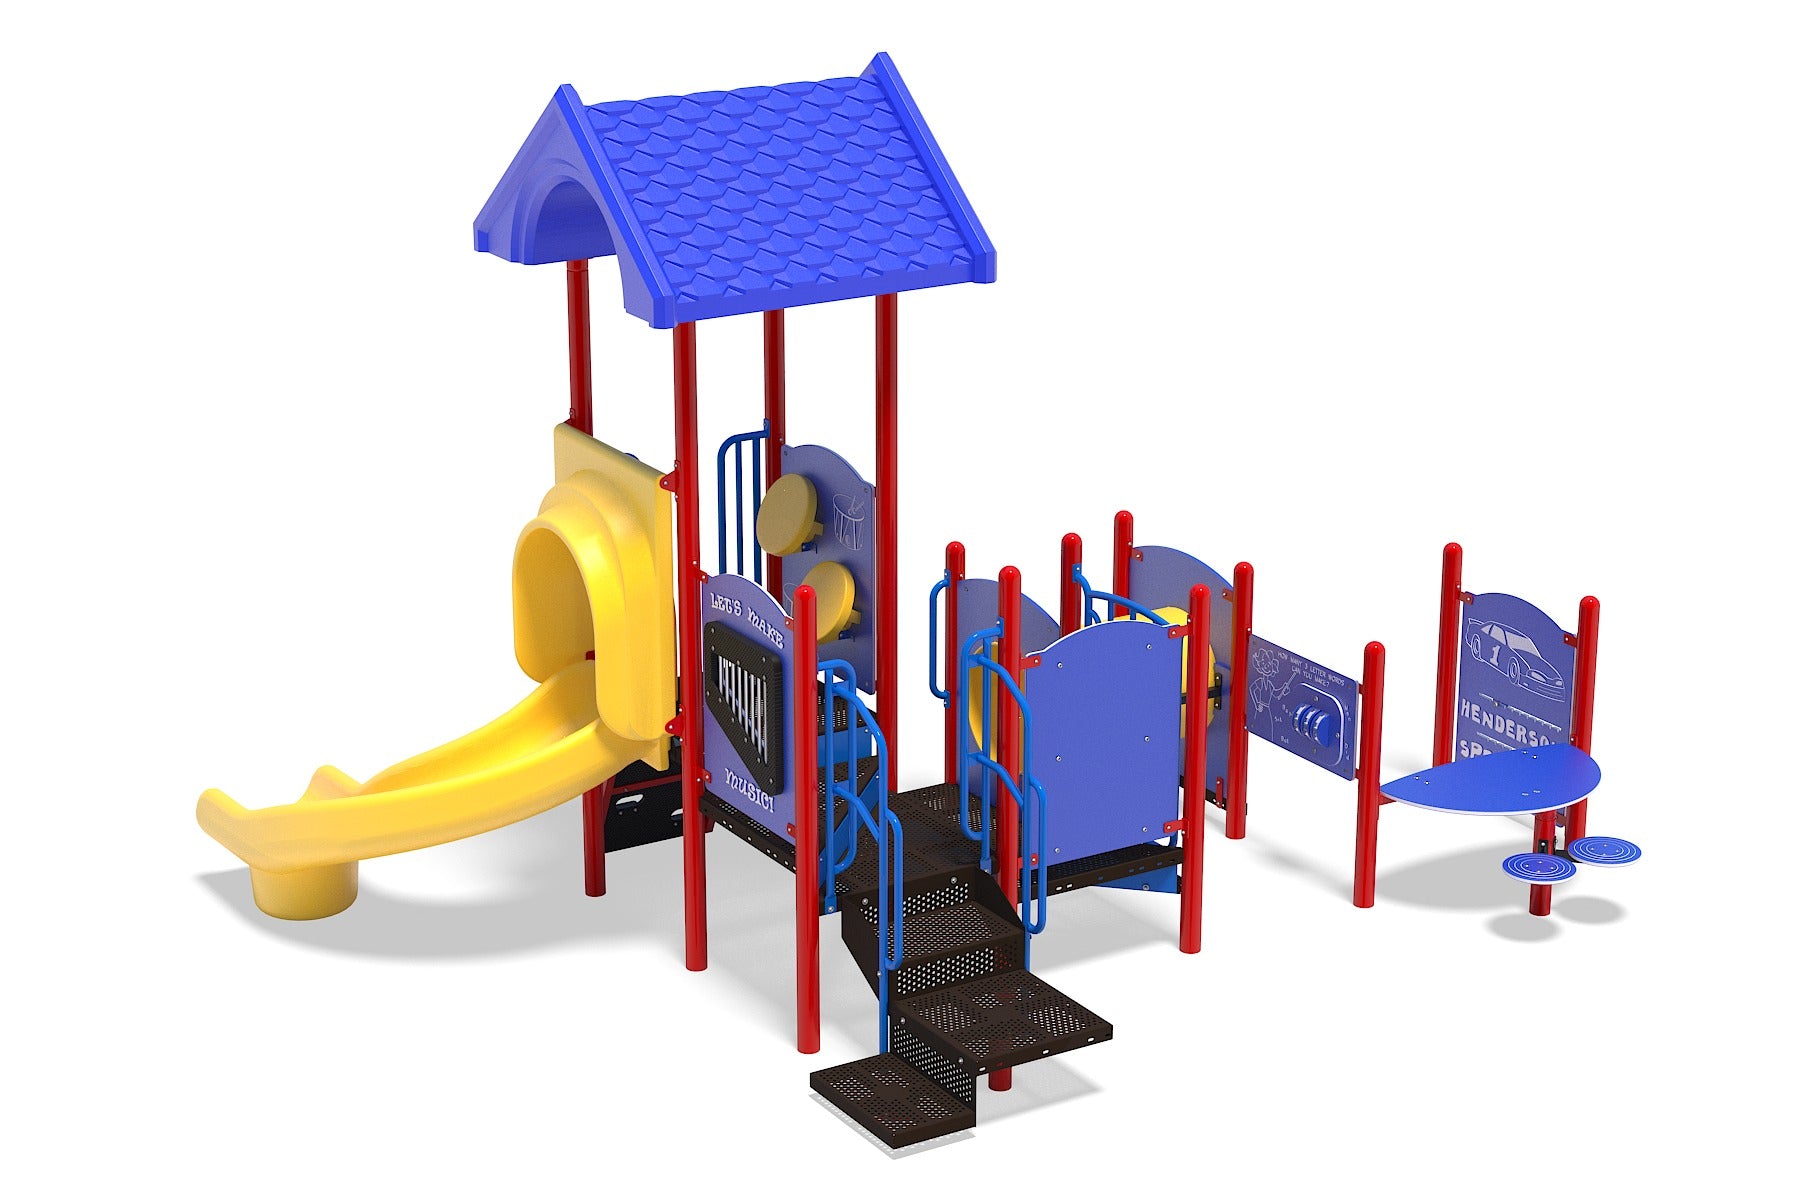 Kids Quest Playground